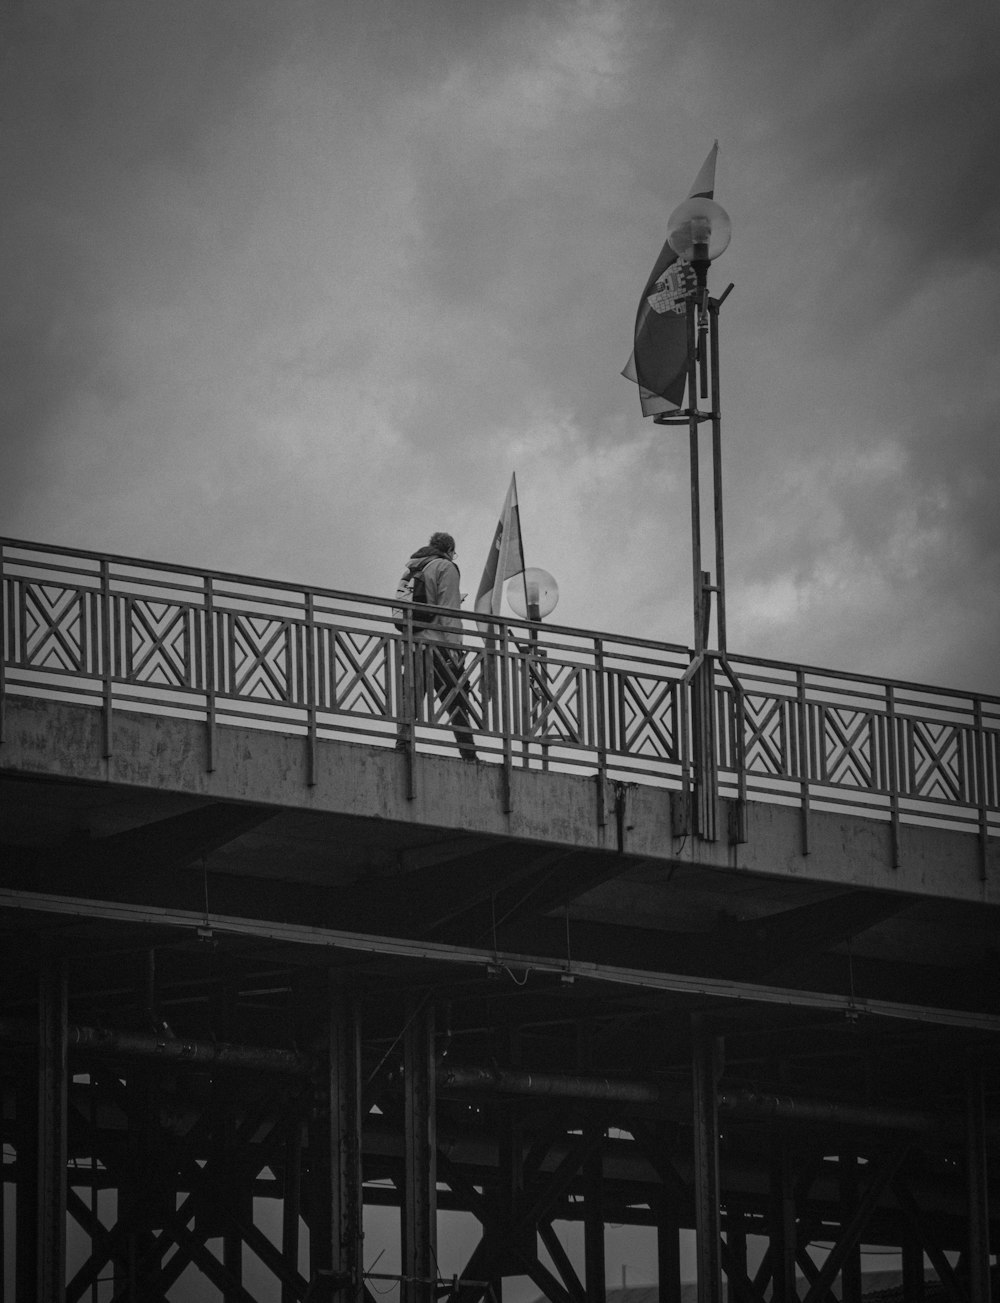 a man walking across a bridge with a kite